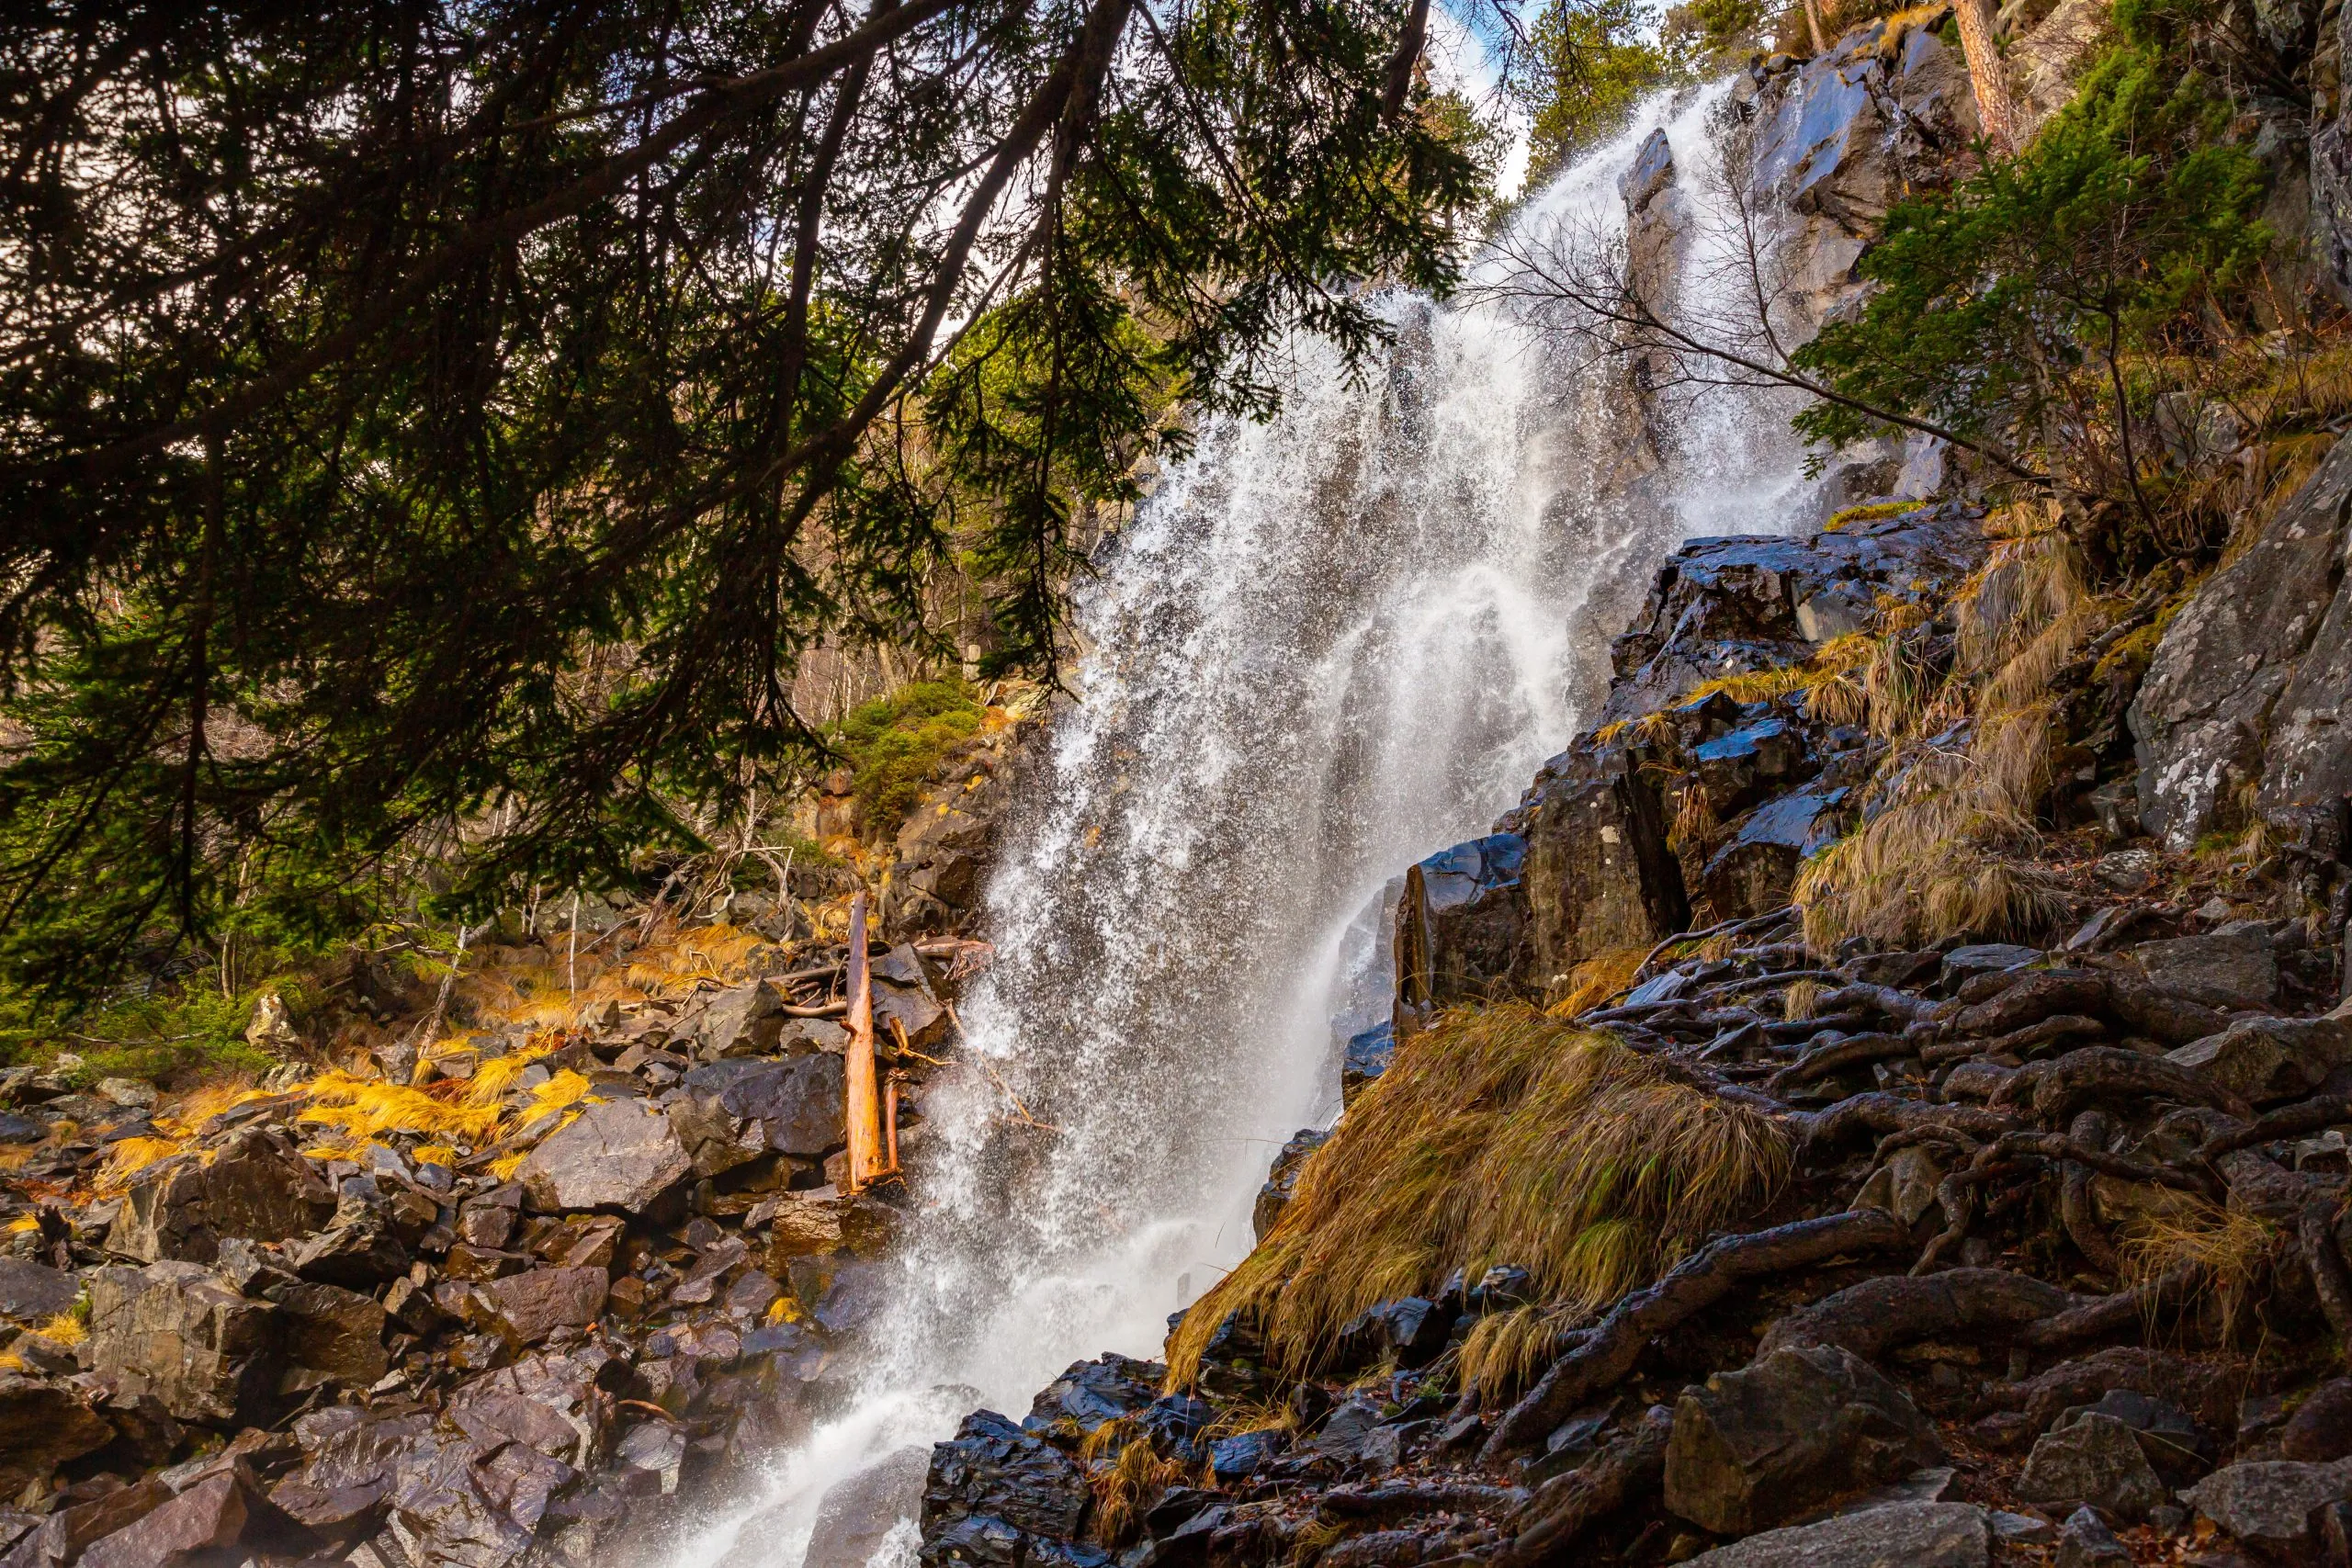 Cascada (vattenfall) de Ratera, ovanför sjön Sant Maurici, sedd från leden till Refugi d'Amitges, nationalparken Aiquestortes i Estany de Sant Maurici, Pyrenéerna, byn Espot, Katalonien, Spanien